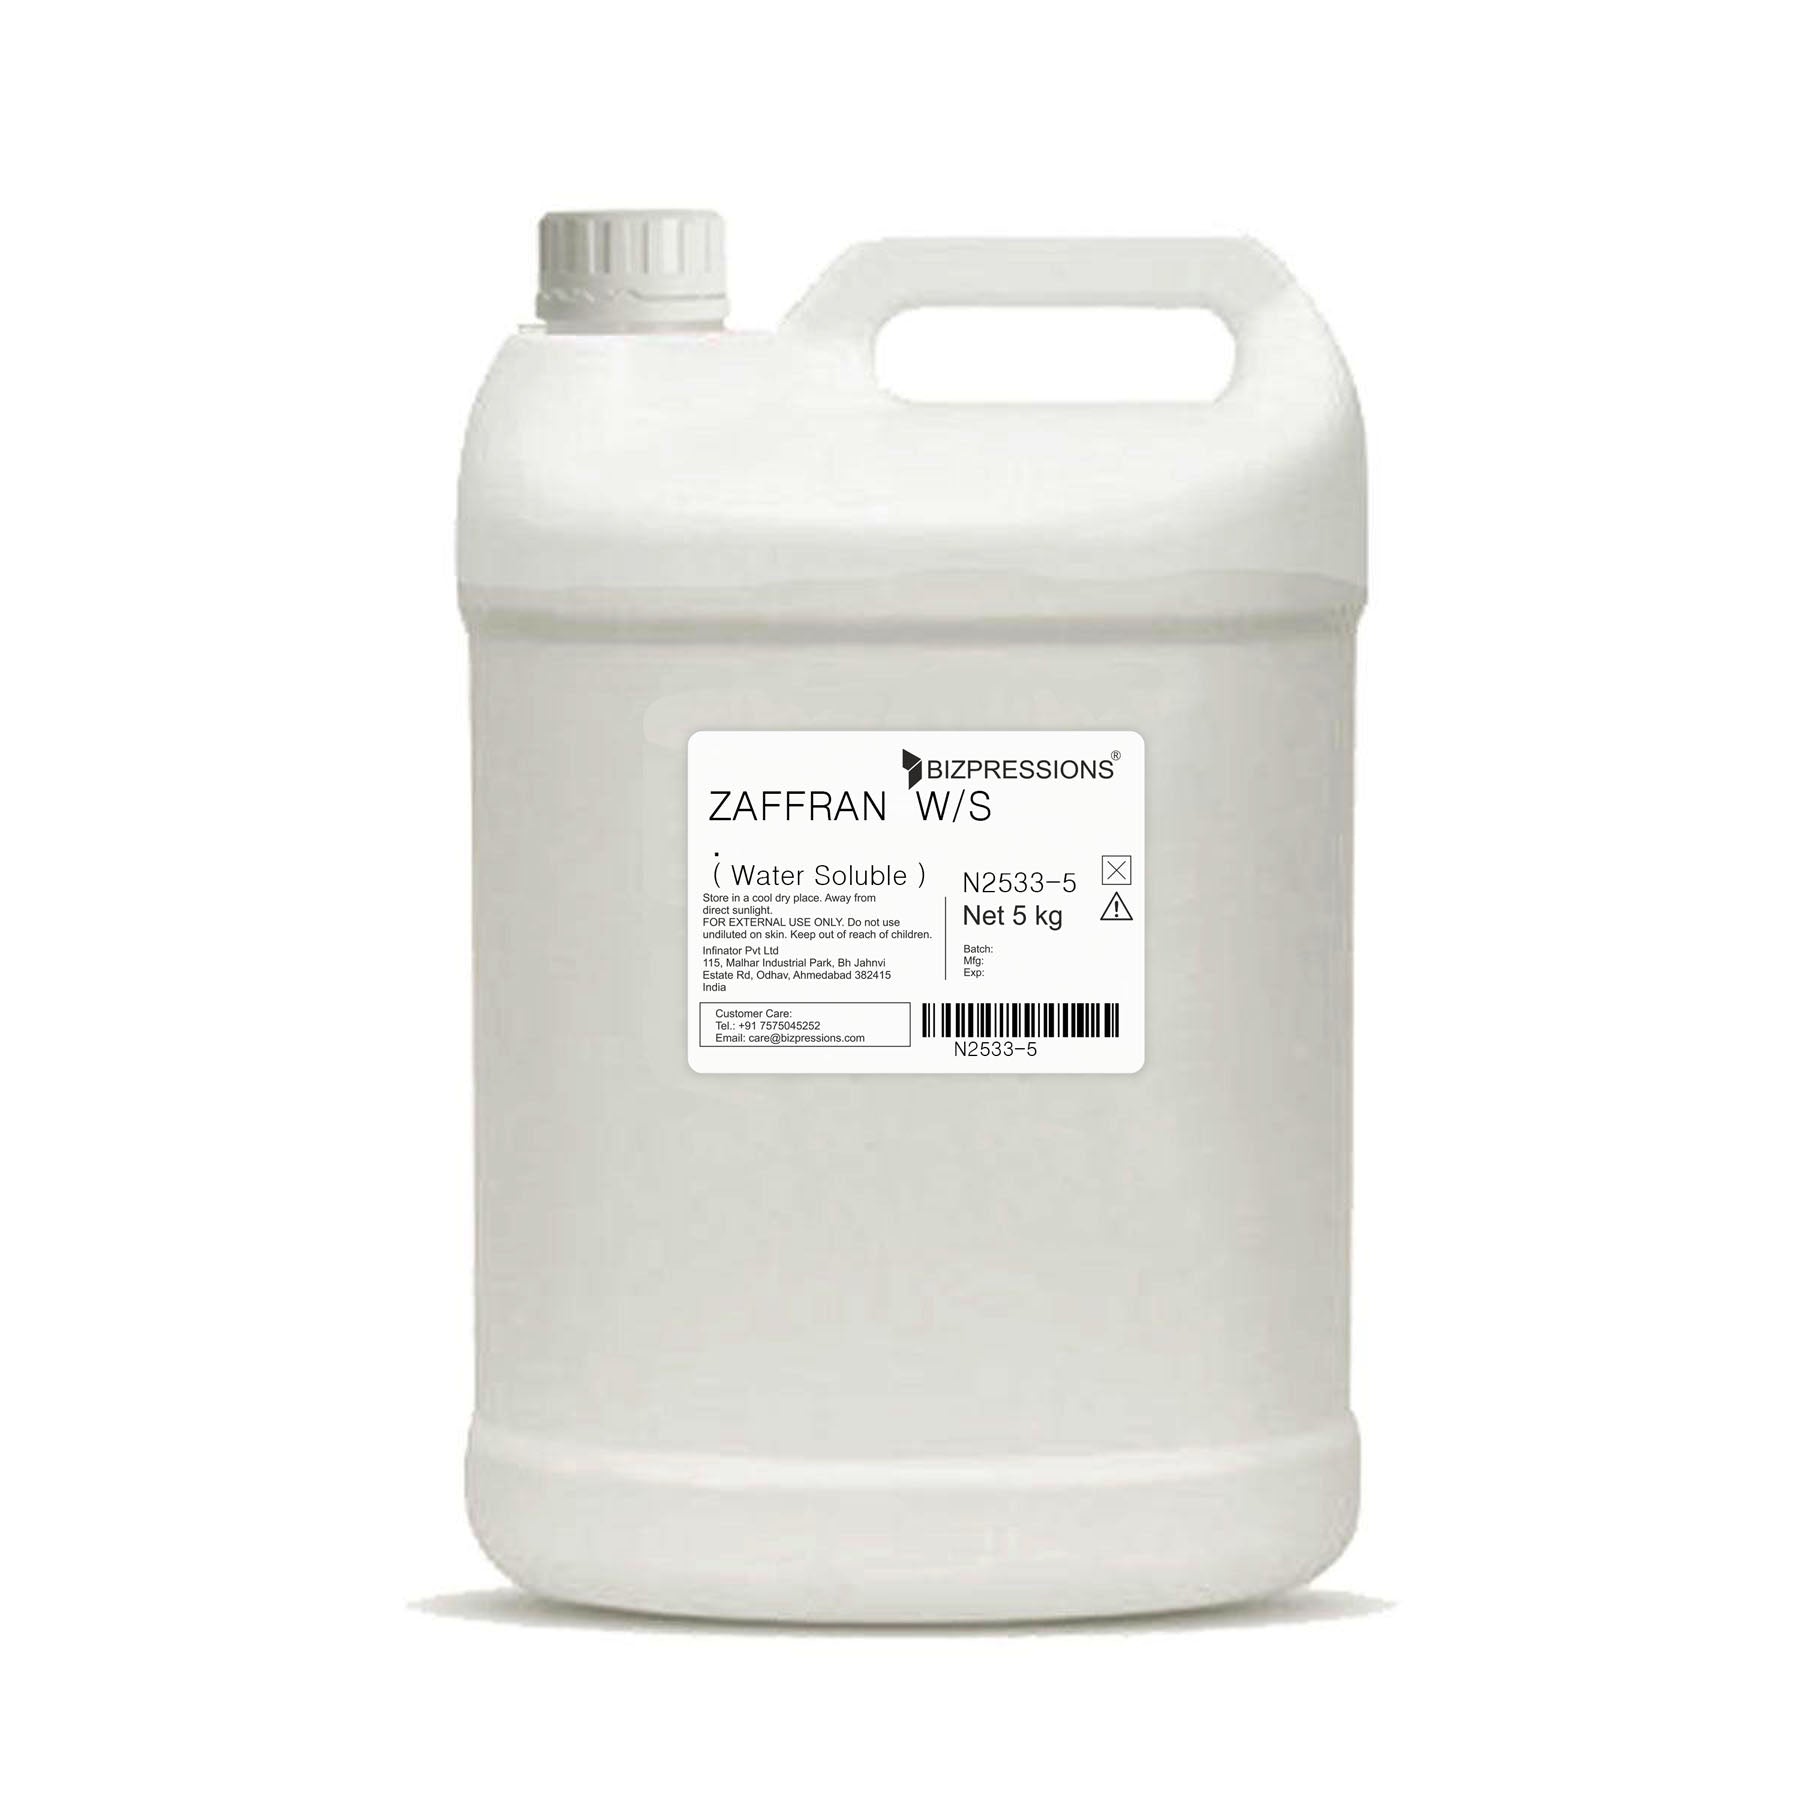 ZAFFRAN W/S - Fragrance ( Water Soluble ) - 5 kg